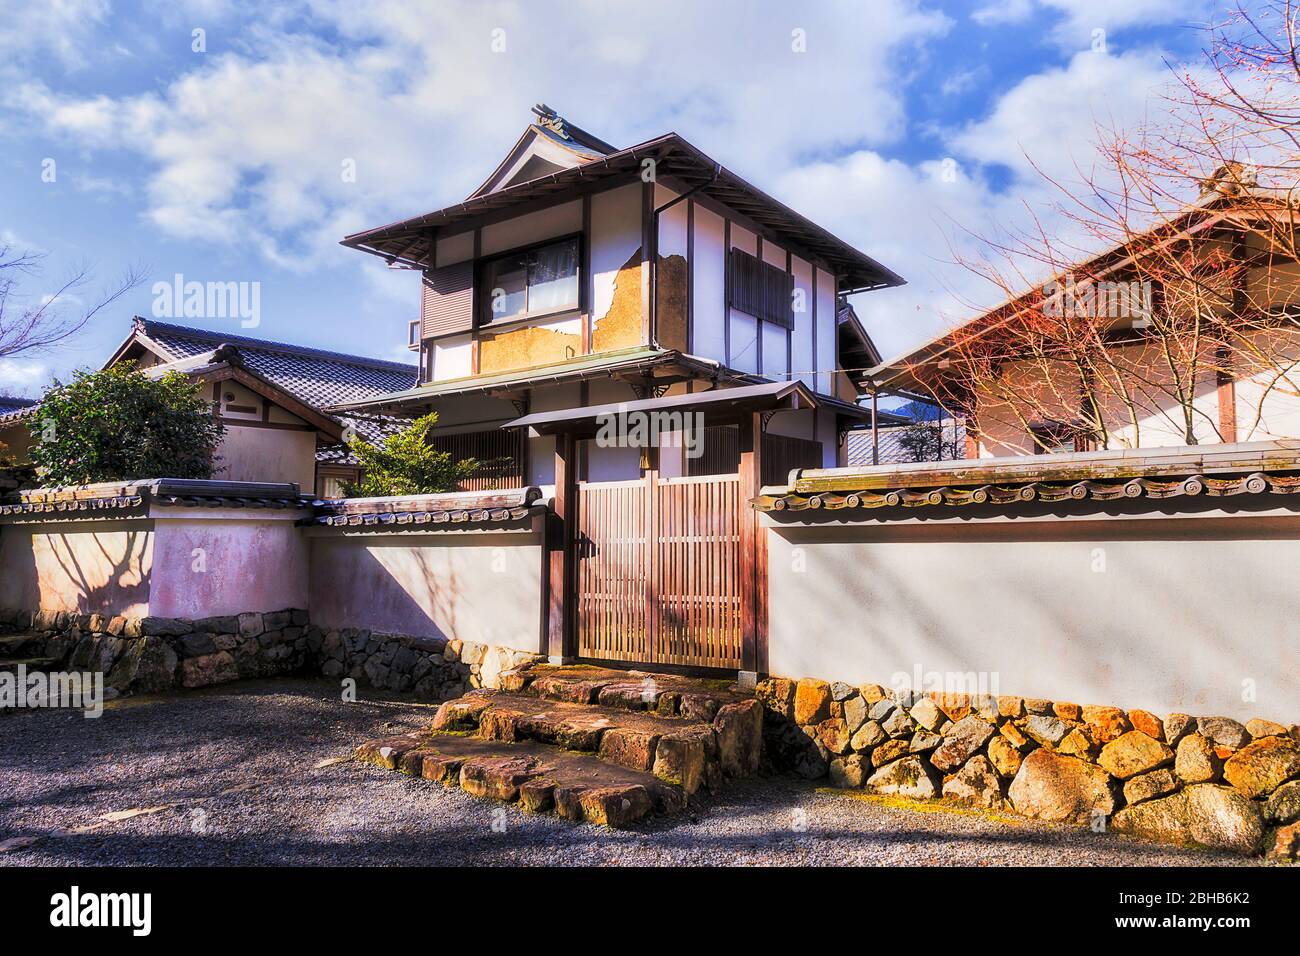 Storica casa residenziale in tradizionale stile architettonico giapponese circondata da pareti bianche con porta in legno nel remoto villaggio di Ohara. Foto Stock